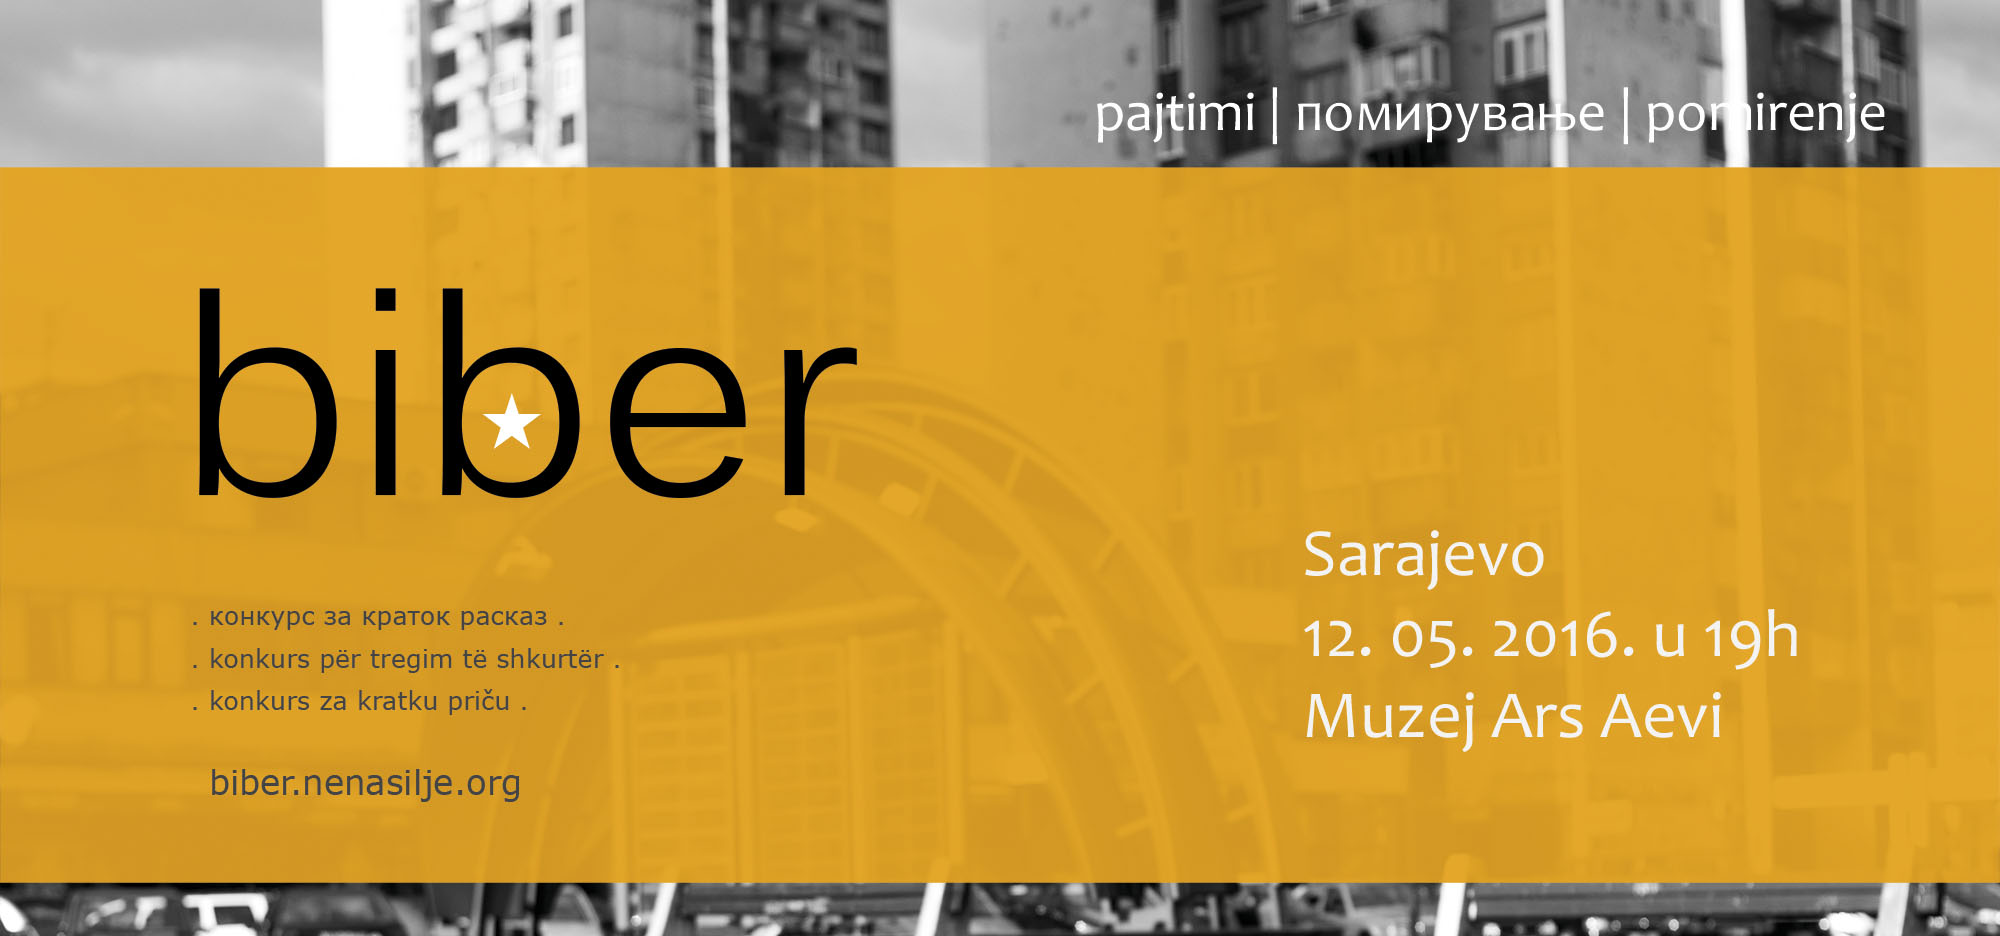 Promocije zbirke Biber u Sarajevu, Beogradu i Skoplju